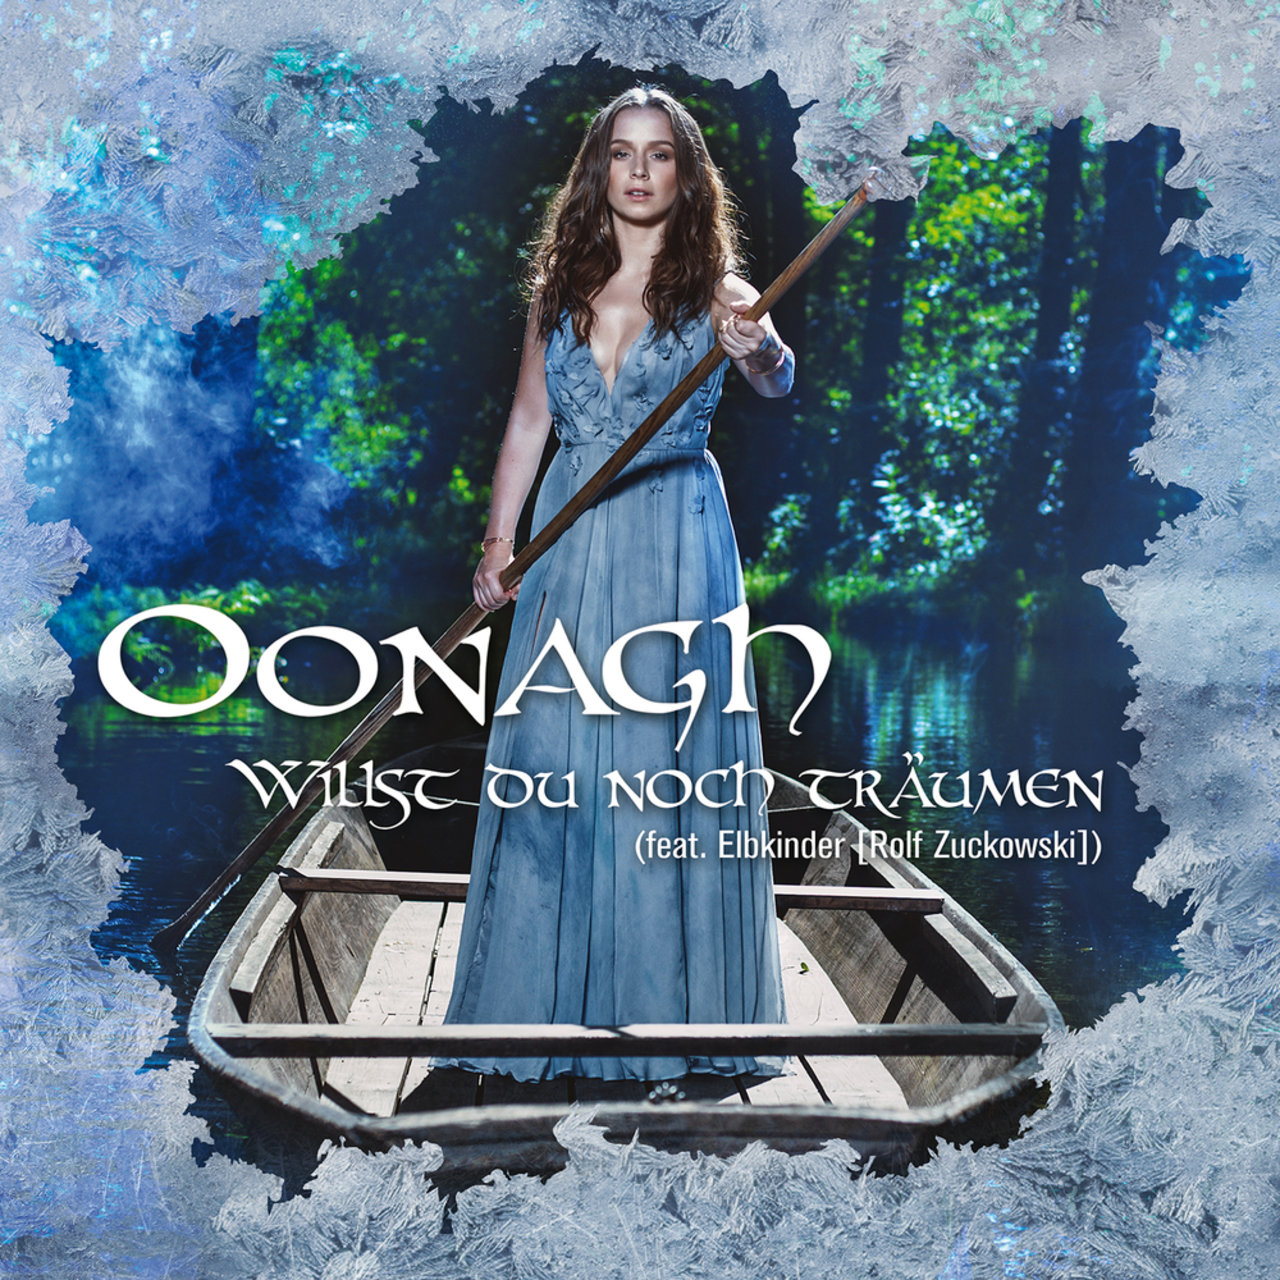 Oonagh featuring Elbkinder (Rolf Zuckowski) — Willst du noch träumen cover artwork